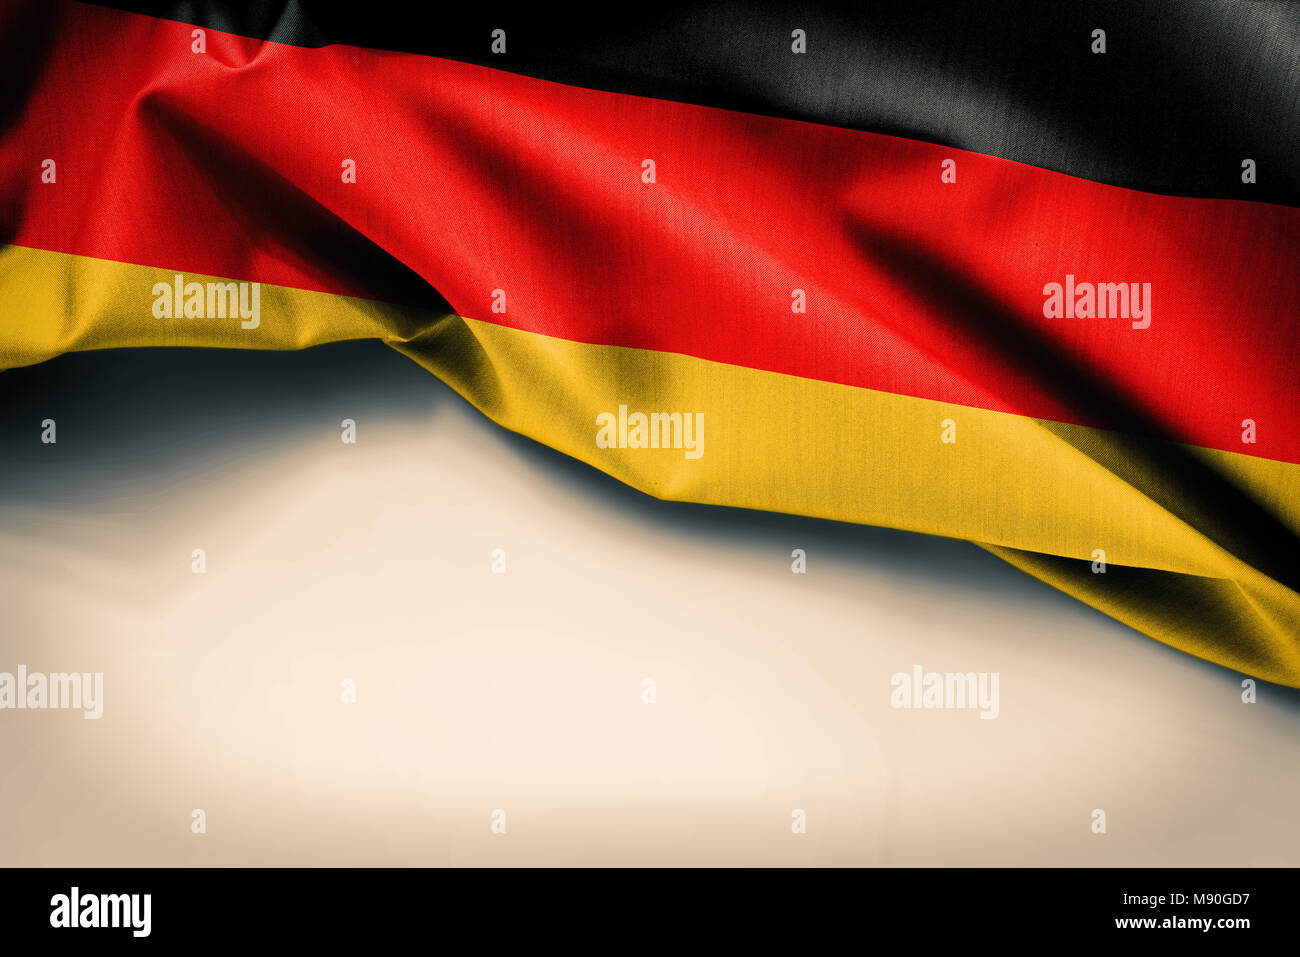 Germany flag on plain background Stock Photo